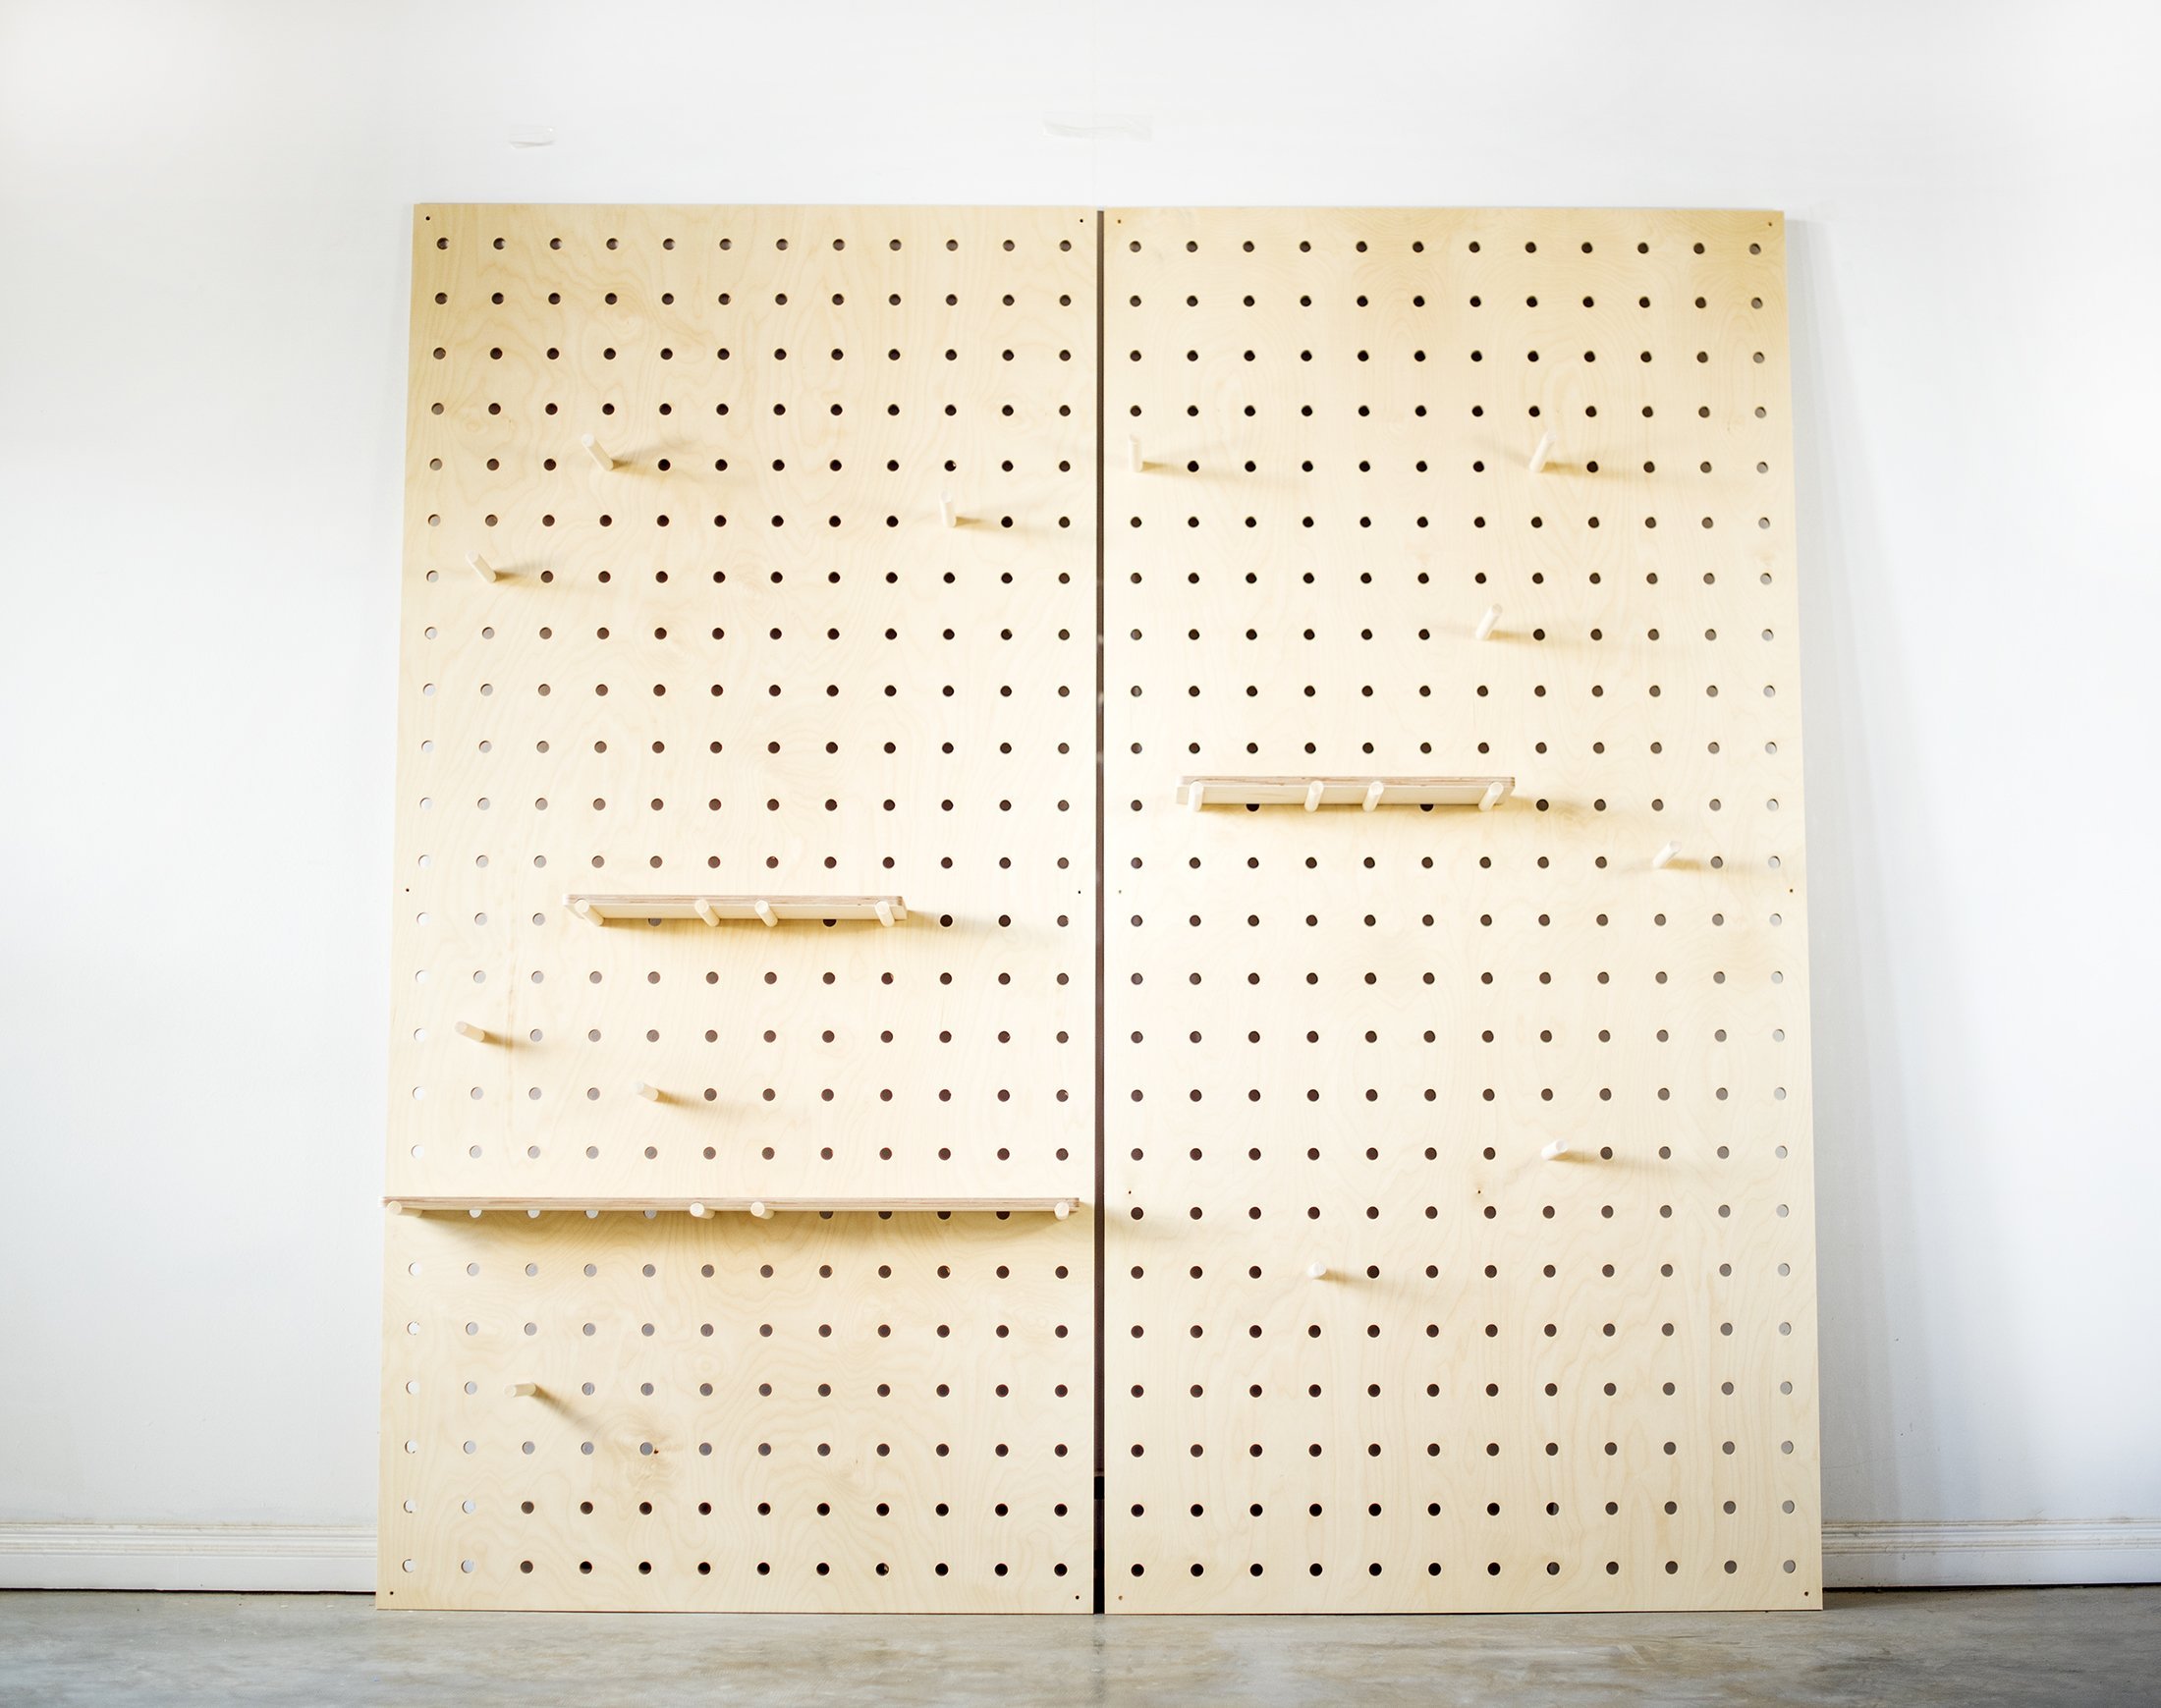 100 X 50 Cm Pegboard / Pegboard / Wooden Peg Board, Peg Board Wall, Peg  Board Shelf, Wall Organizer, Pegboard Wood, Wall Perforated Board  Perforated Board 